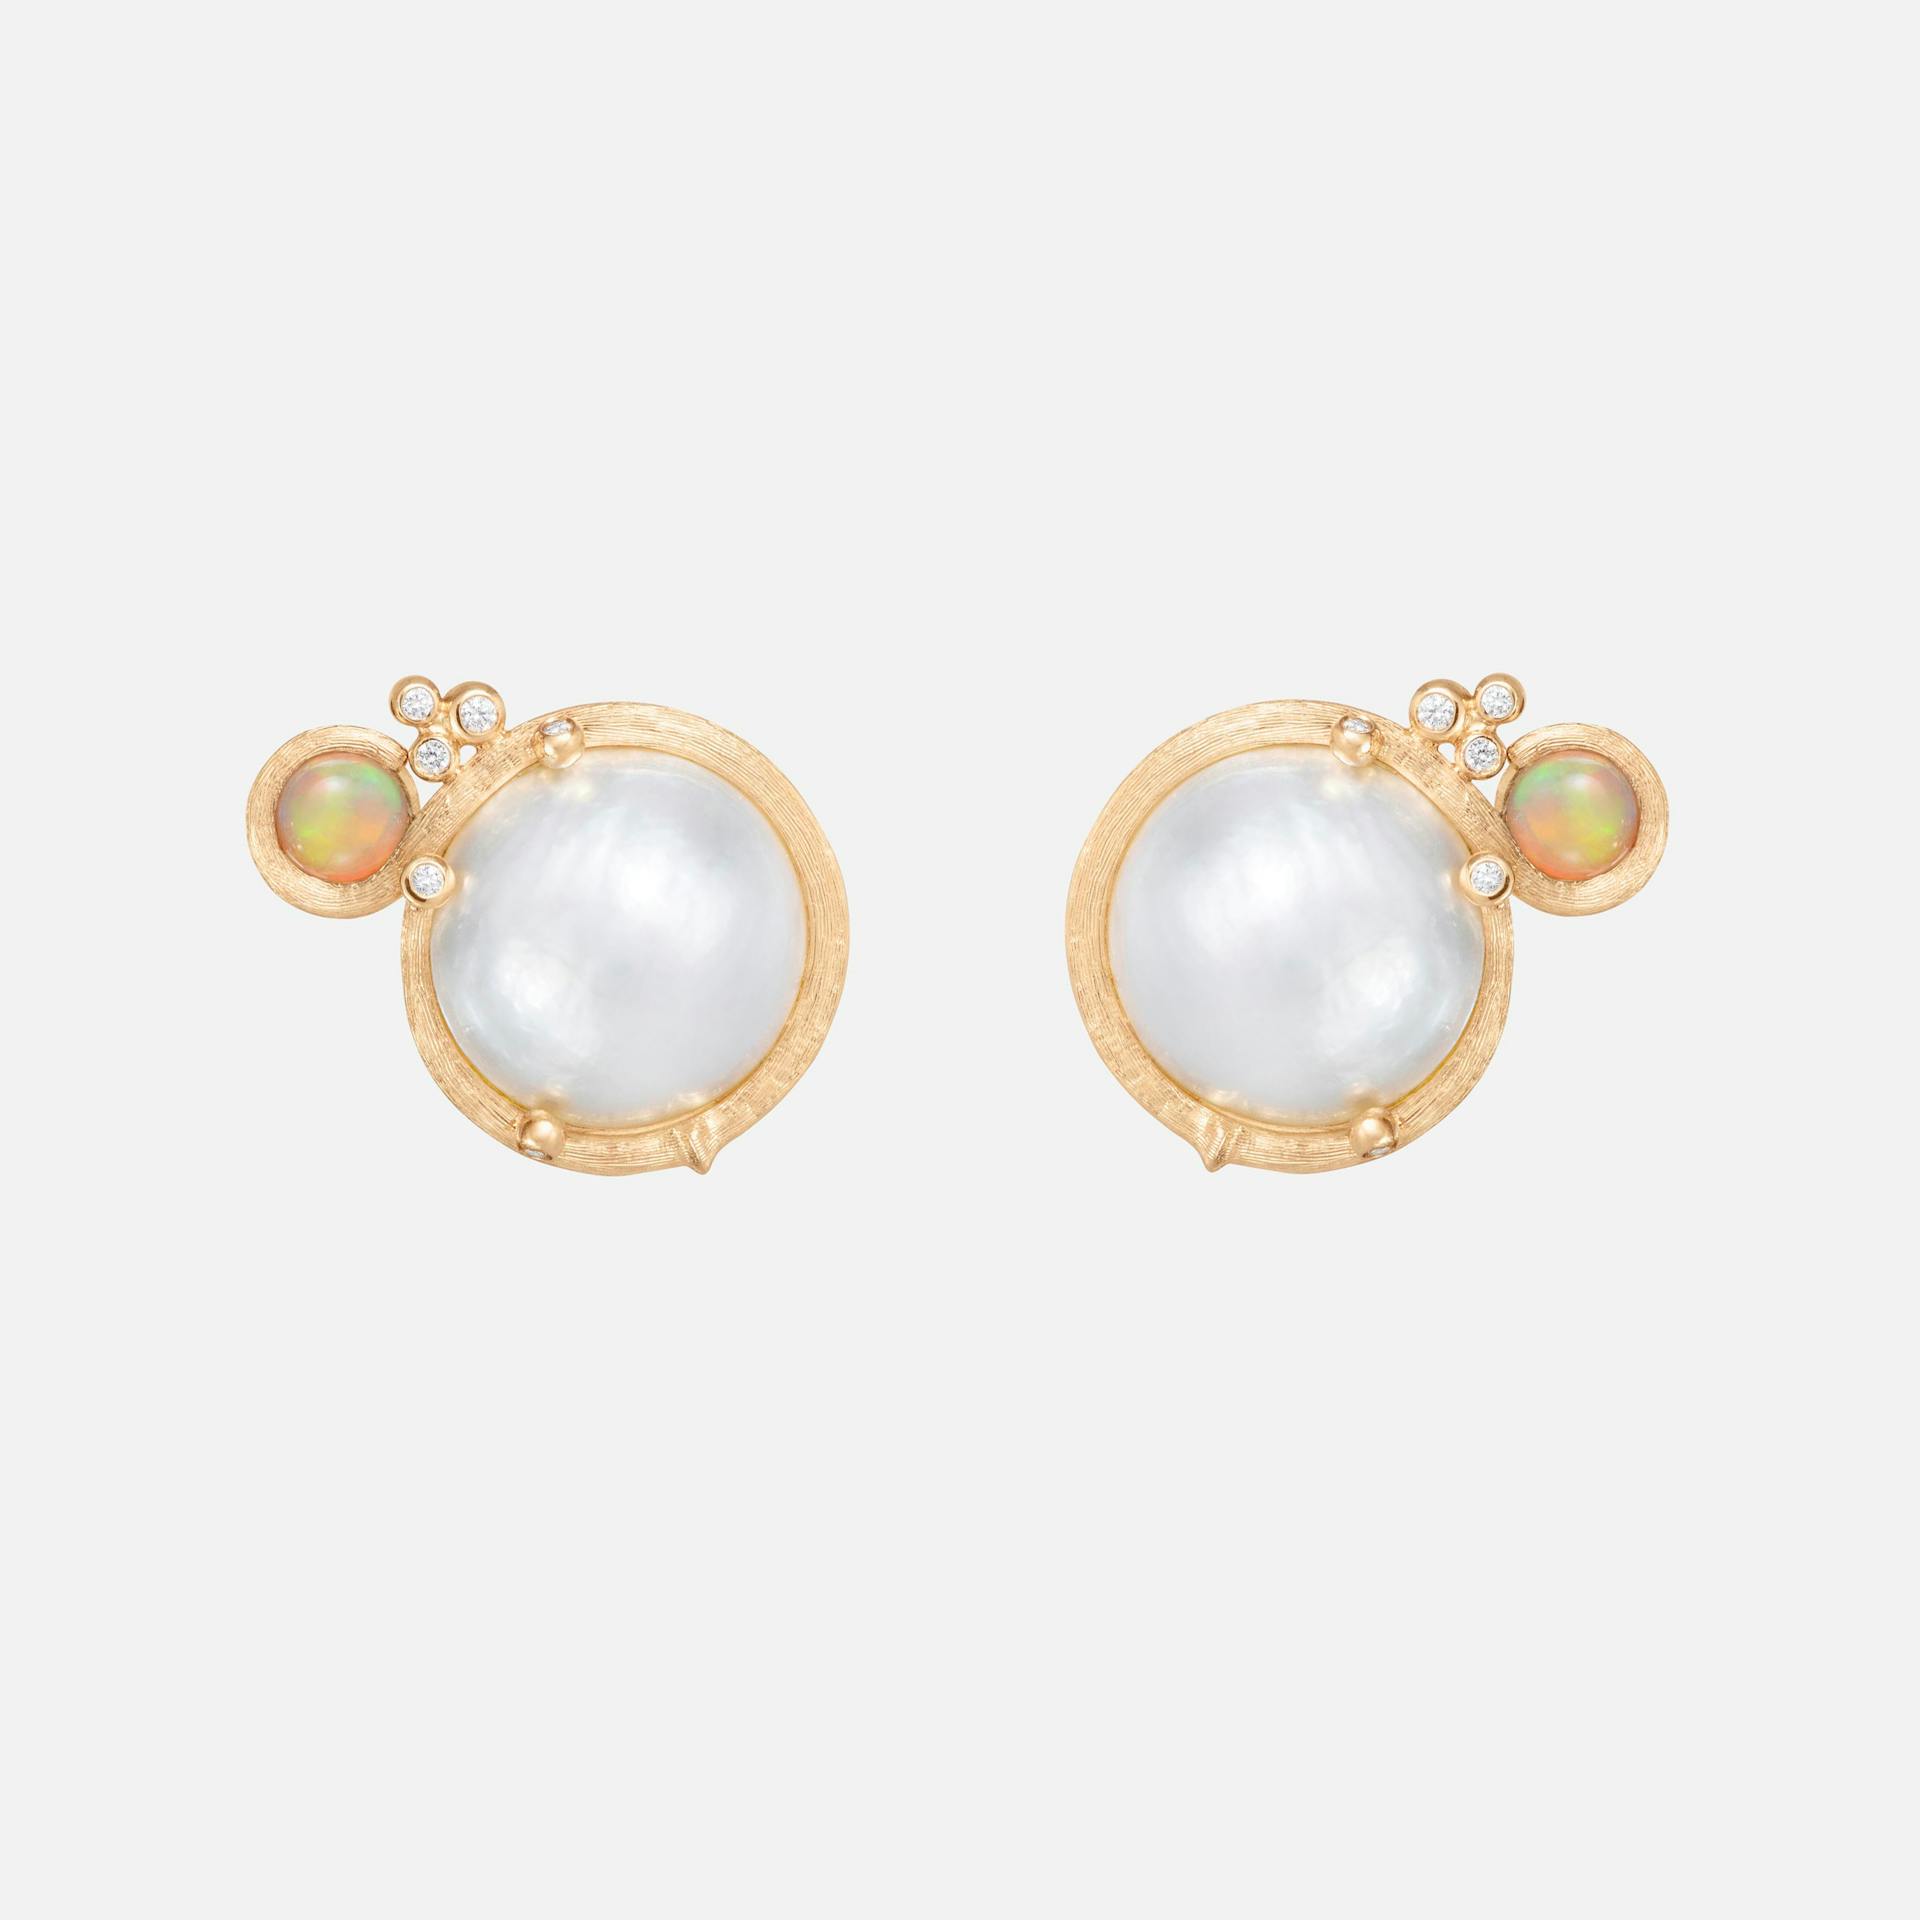 BoHo øreclips små 18k guld med Mabe perler, opal og diamanter